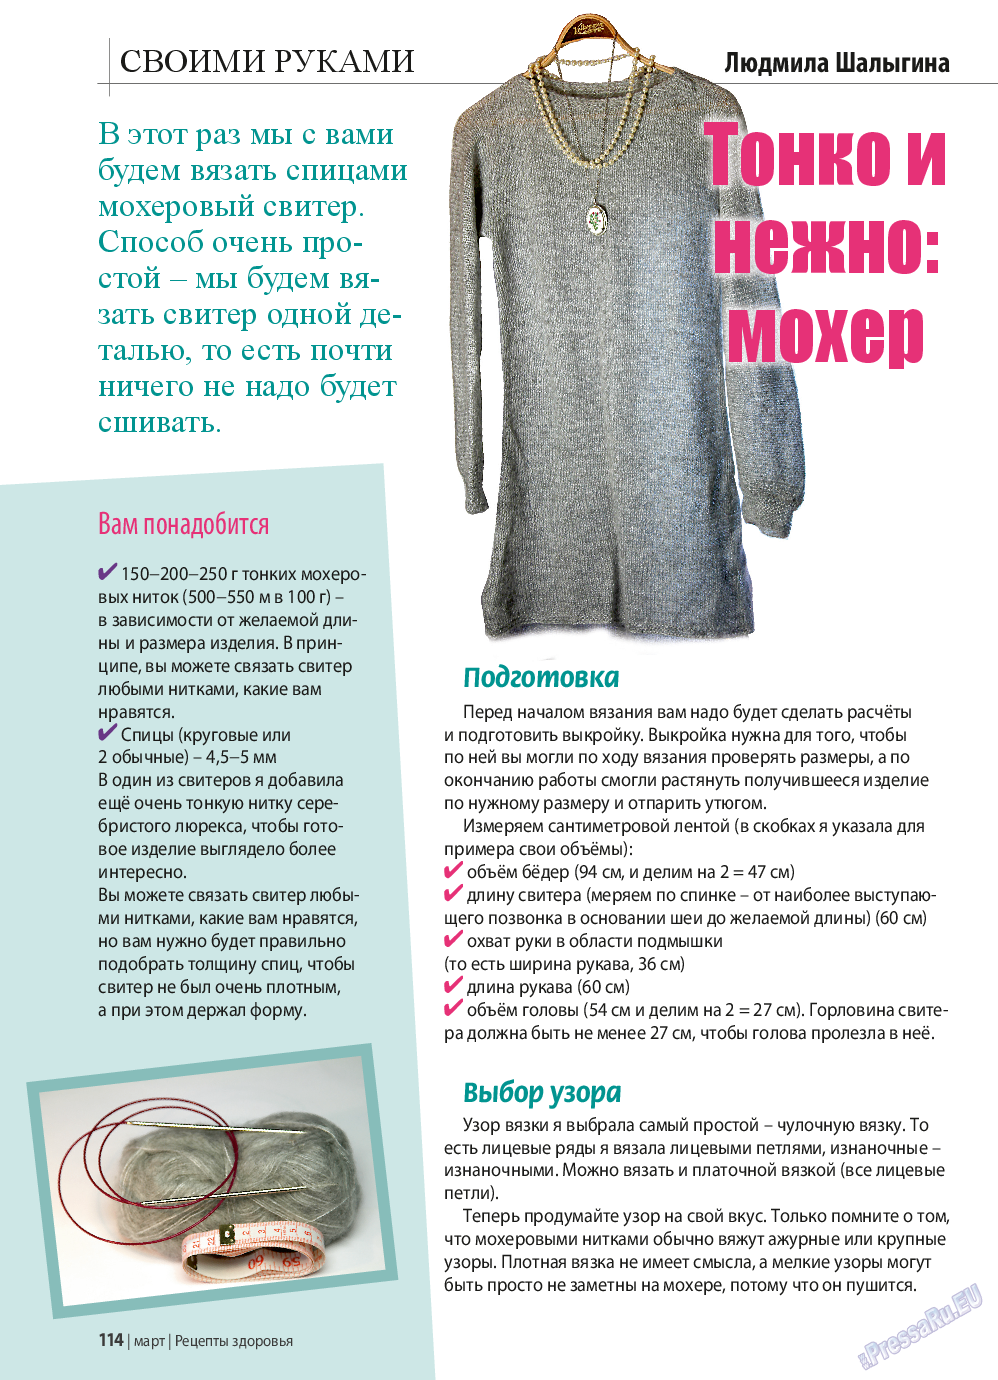 Рецепты здоровья, журнал. 2015 №70 стр.114